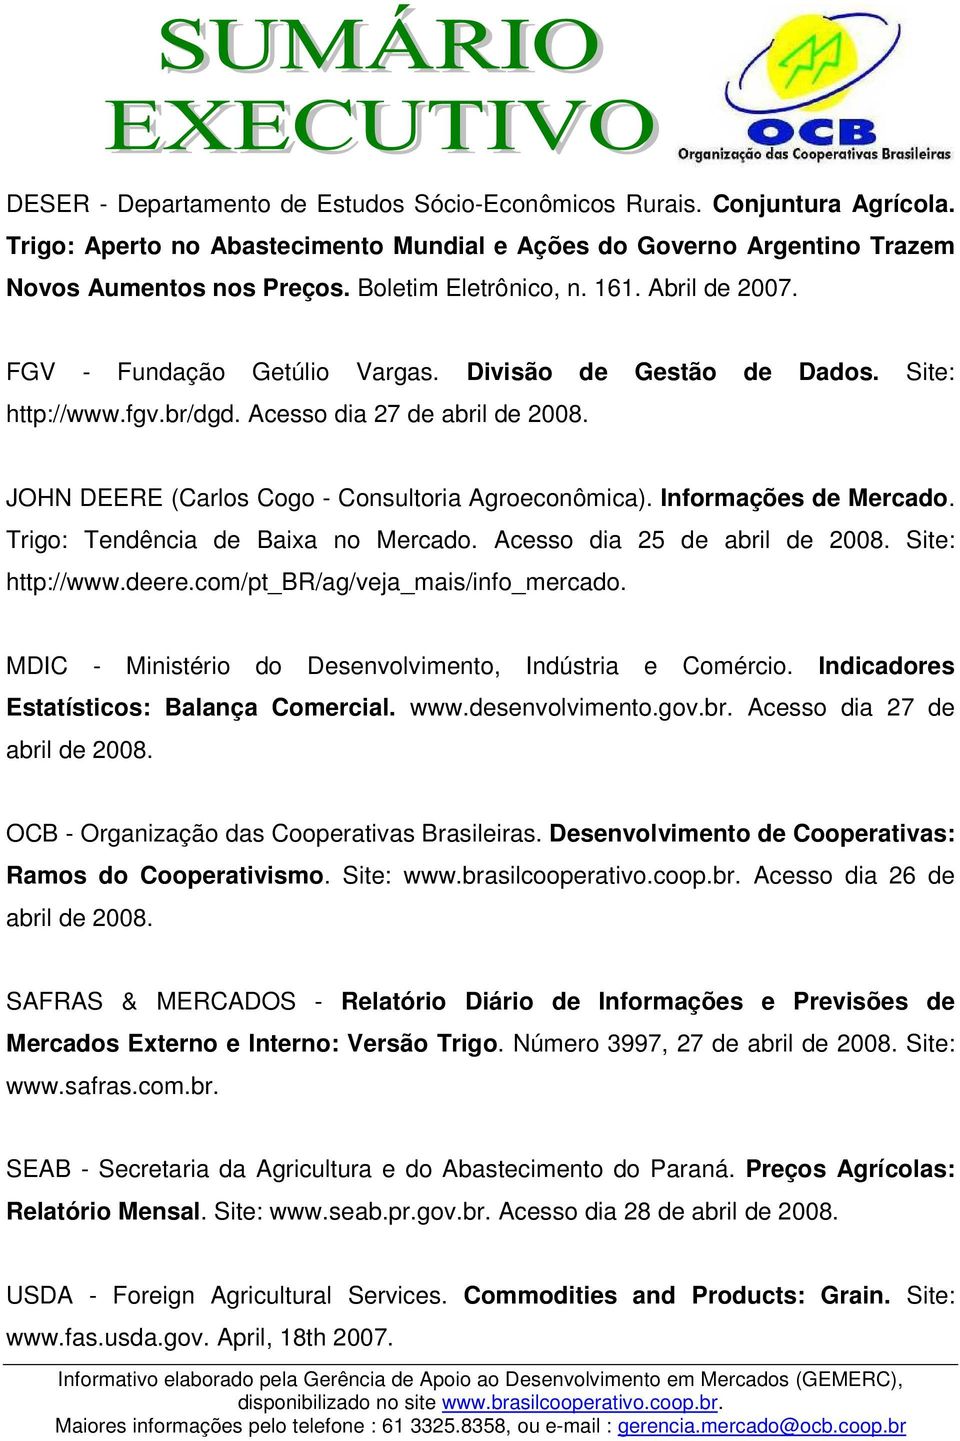 JOHN DEERE (Carlos Cogo - Consultoria Agroeconômica). Informações de Mercado. Trigo: Tendência de Baixa no Mercado. Acesso dia 25 de abril de 2008. Site: http://www.deere.